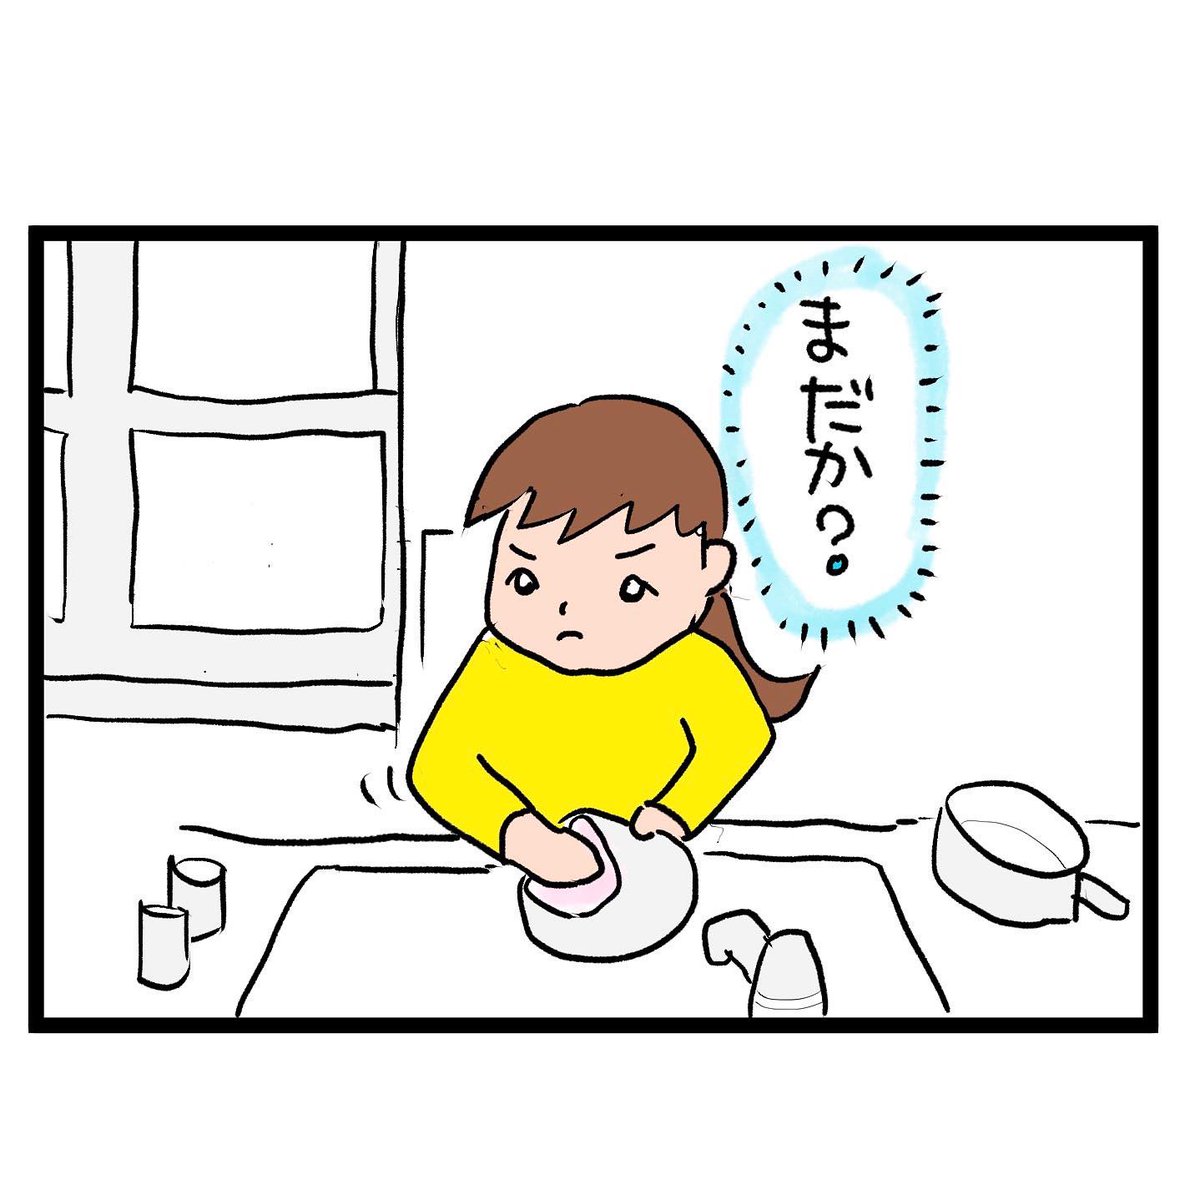 #四コマ漫画
#バラエティ番組
このあとっていつだーっ!! 